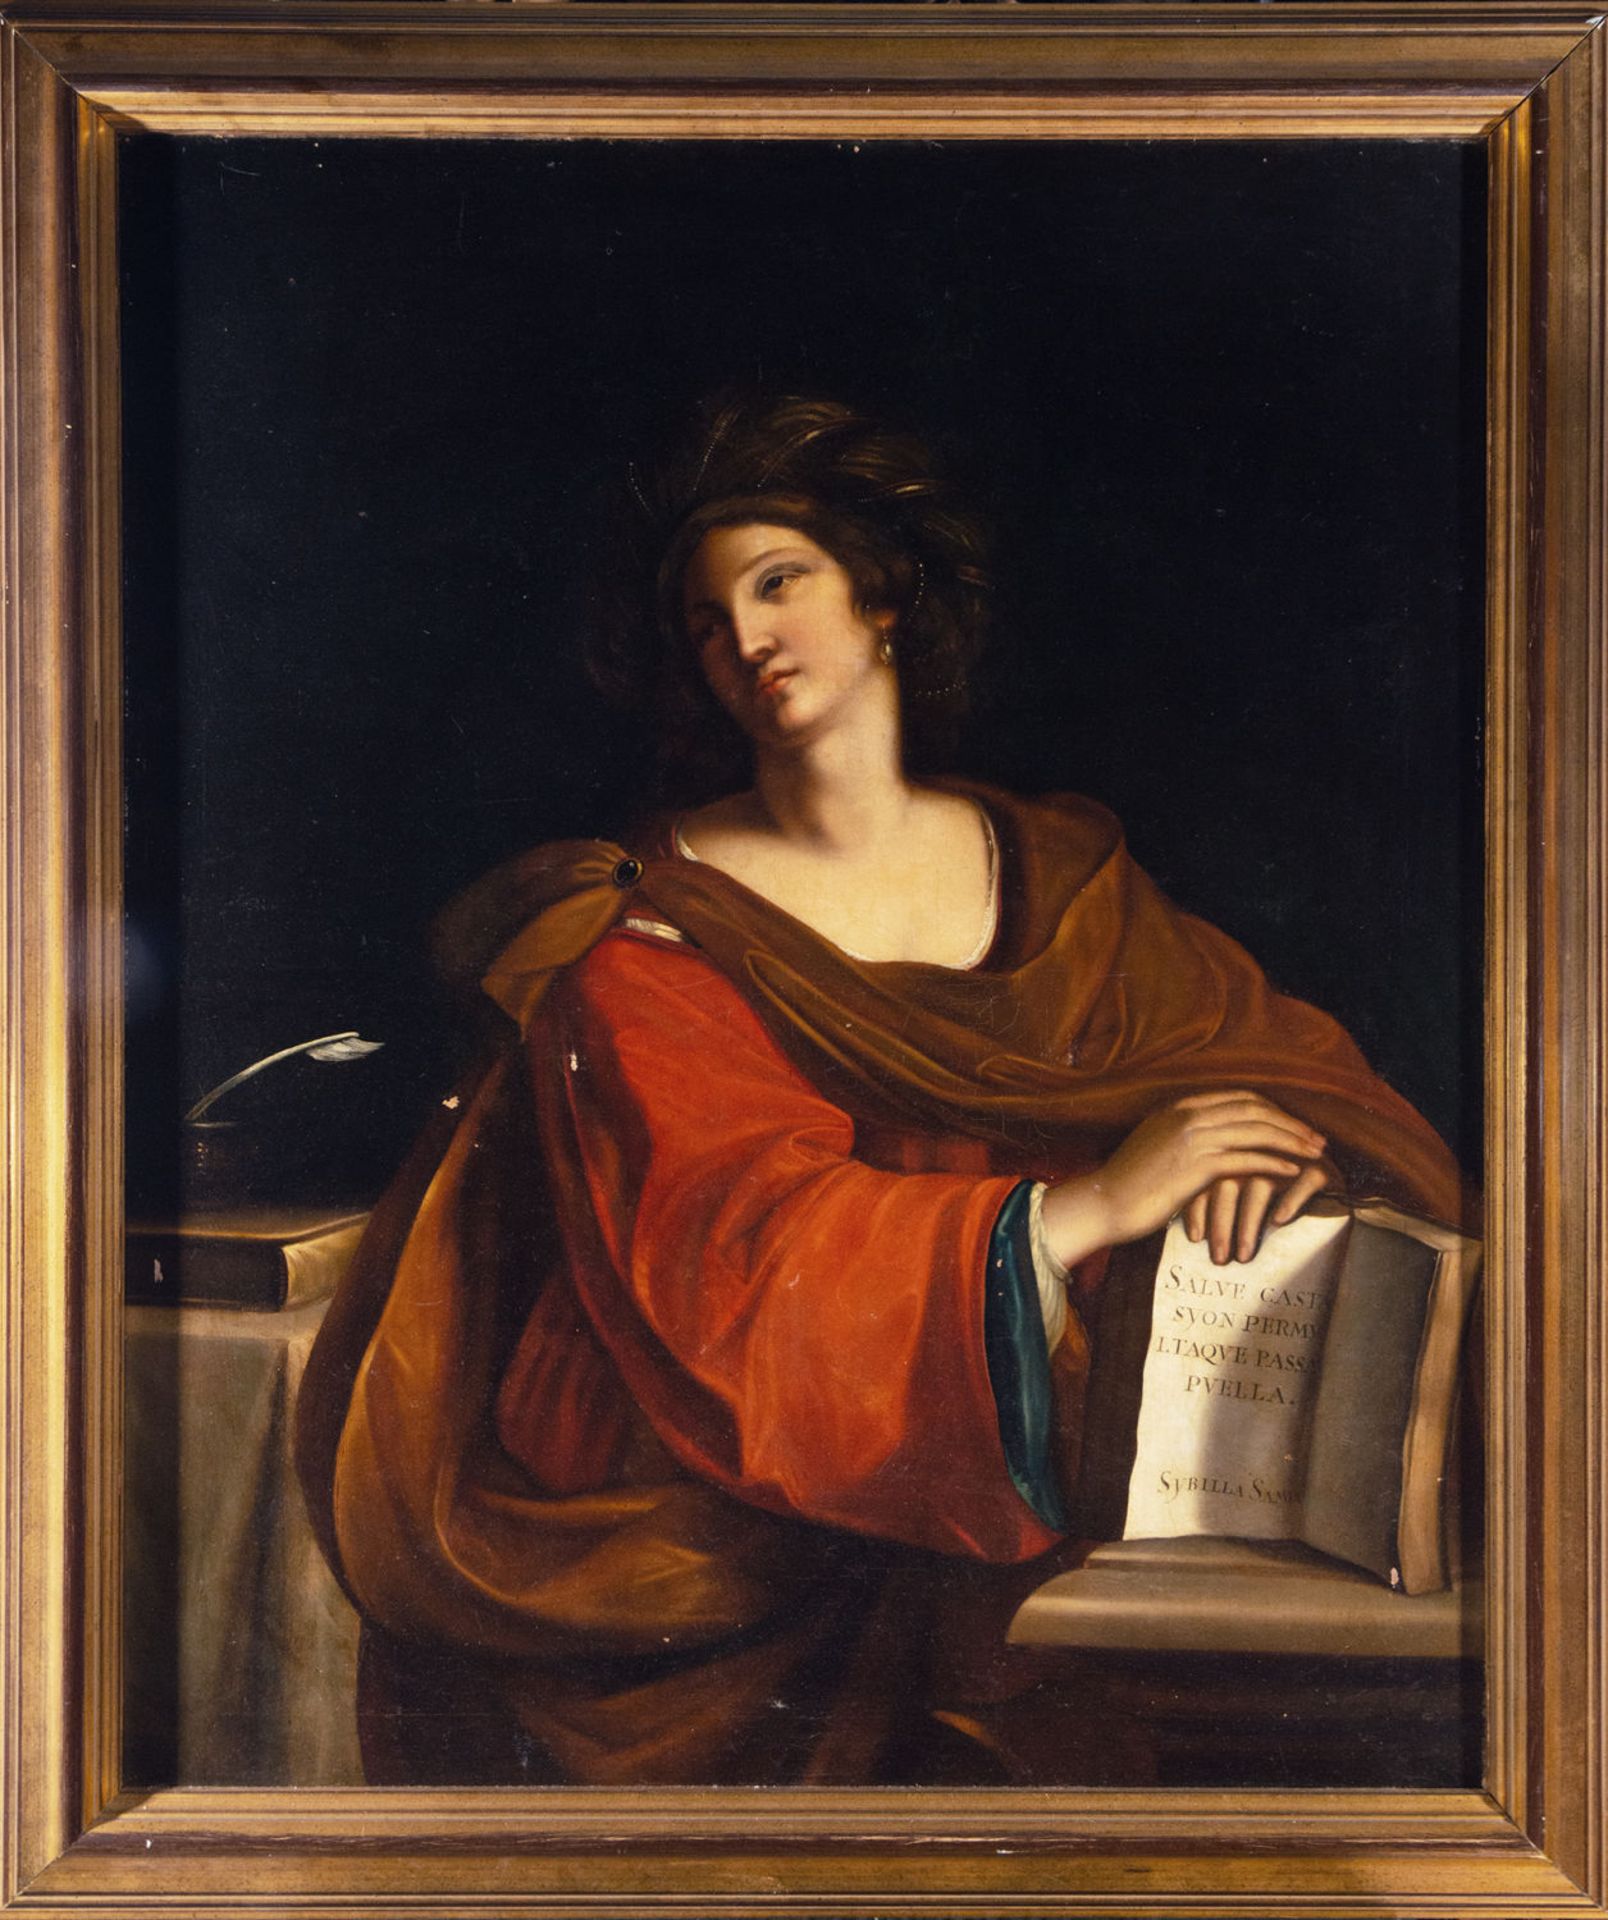 Sibila Samia, after Francesco Barbieri 'El Guercino', 18th century Italian school